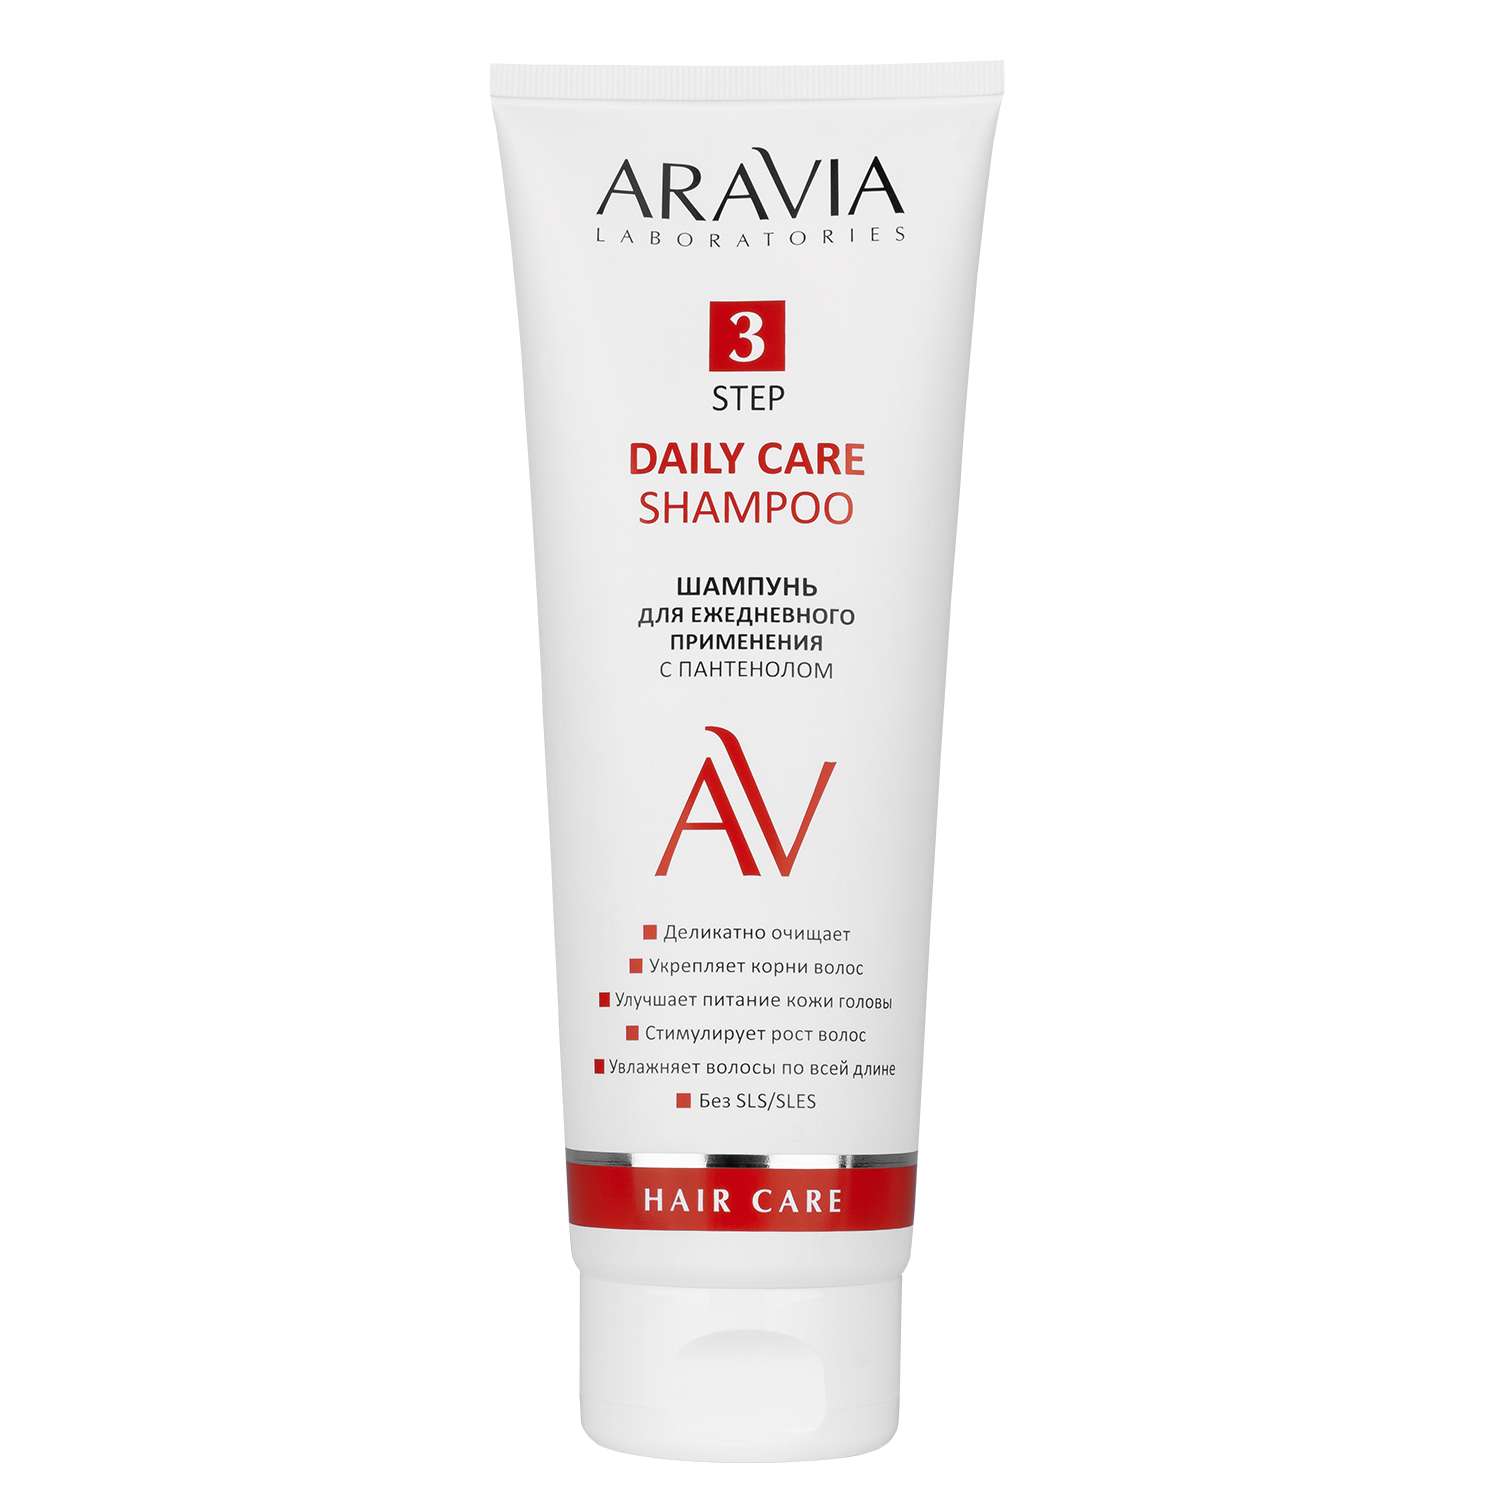 Шампунь ARAVIA Laboratories для ежедневного применения с пантенолом Daily Care Shampoo 250 мл - фото 2